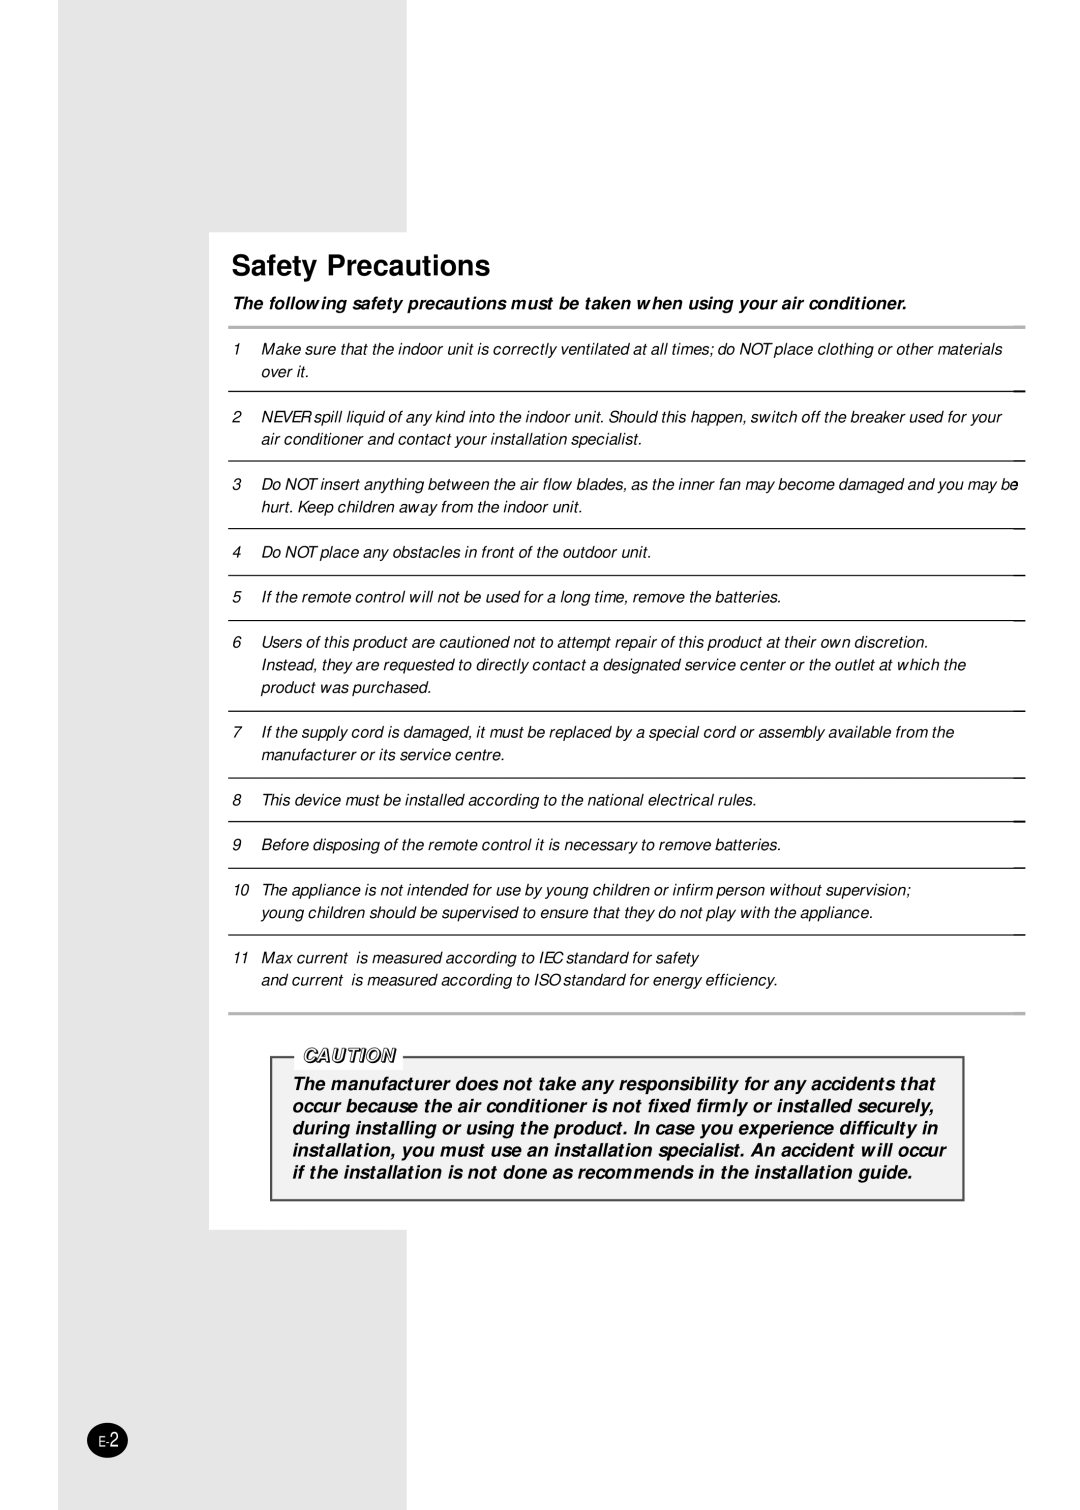 Samsung AM18B1(B2)E09, UM14B1(B2)E2, AM18B1(B2)B09, AM26B1(B2)E12, AM26B1(B2)B13, AM20B1(B2)E06, MC24AC2-12 Safety Precautions 